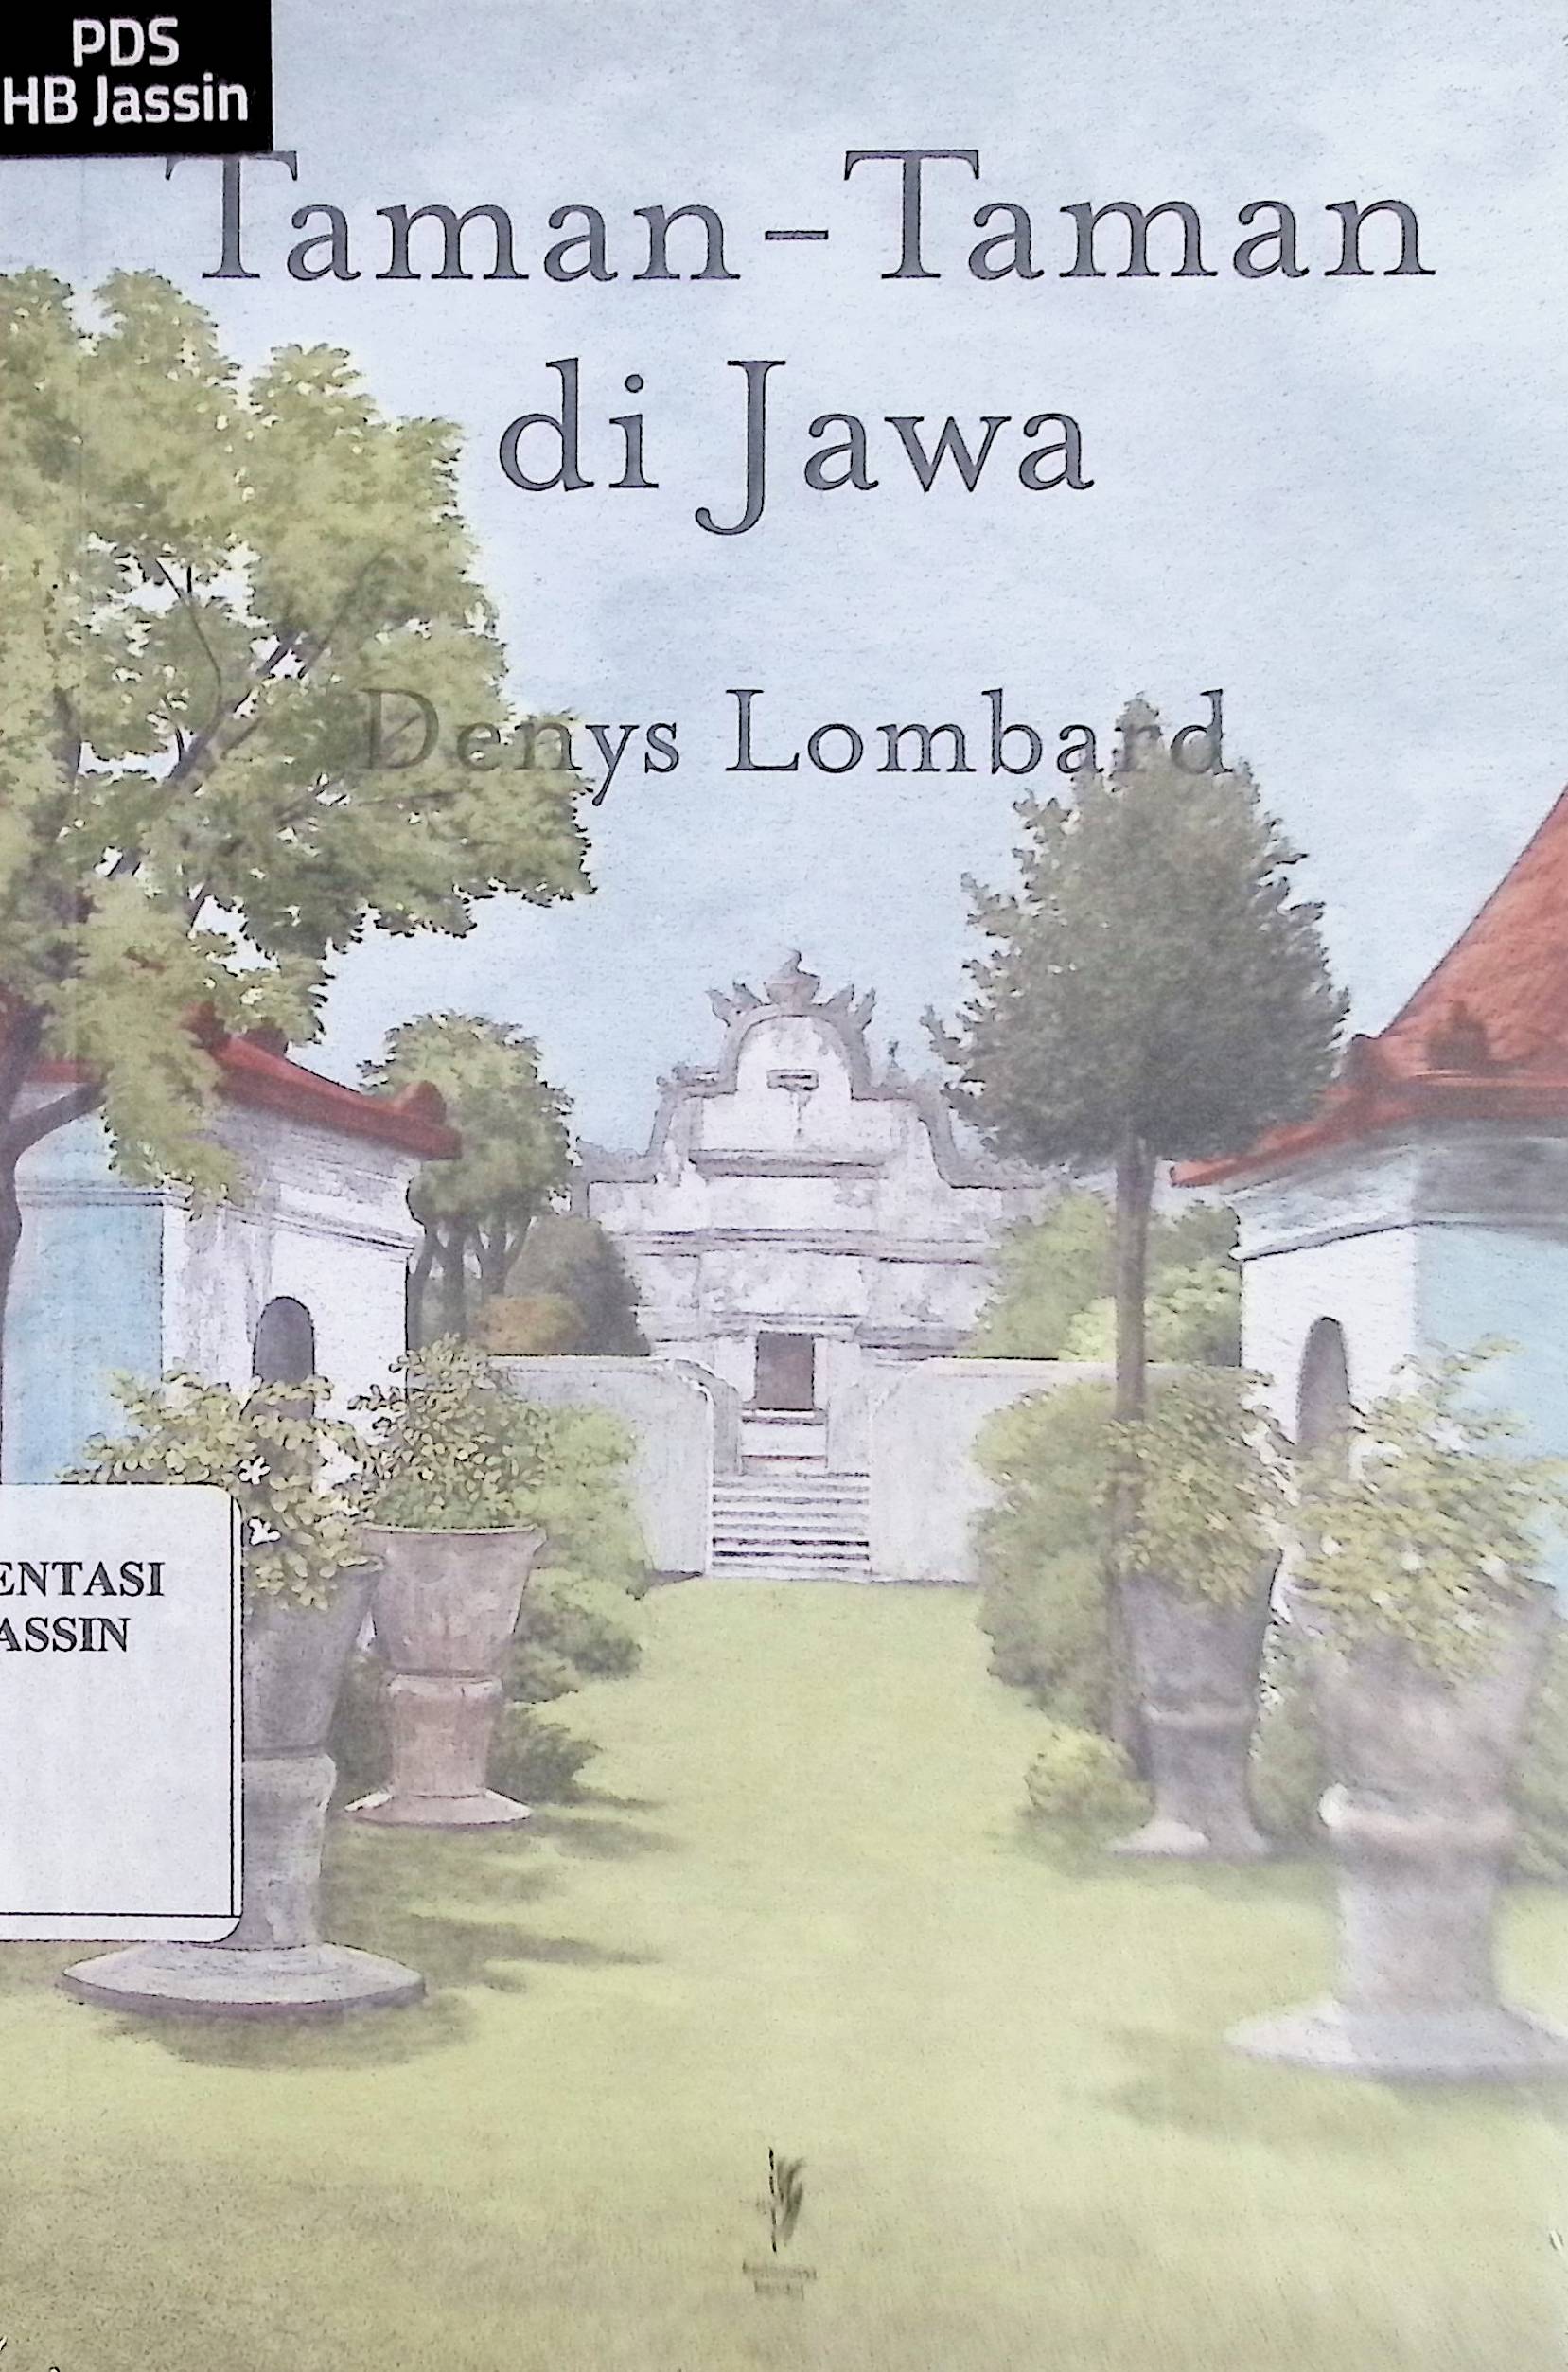 Taman-taman di Jawa